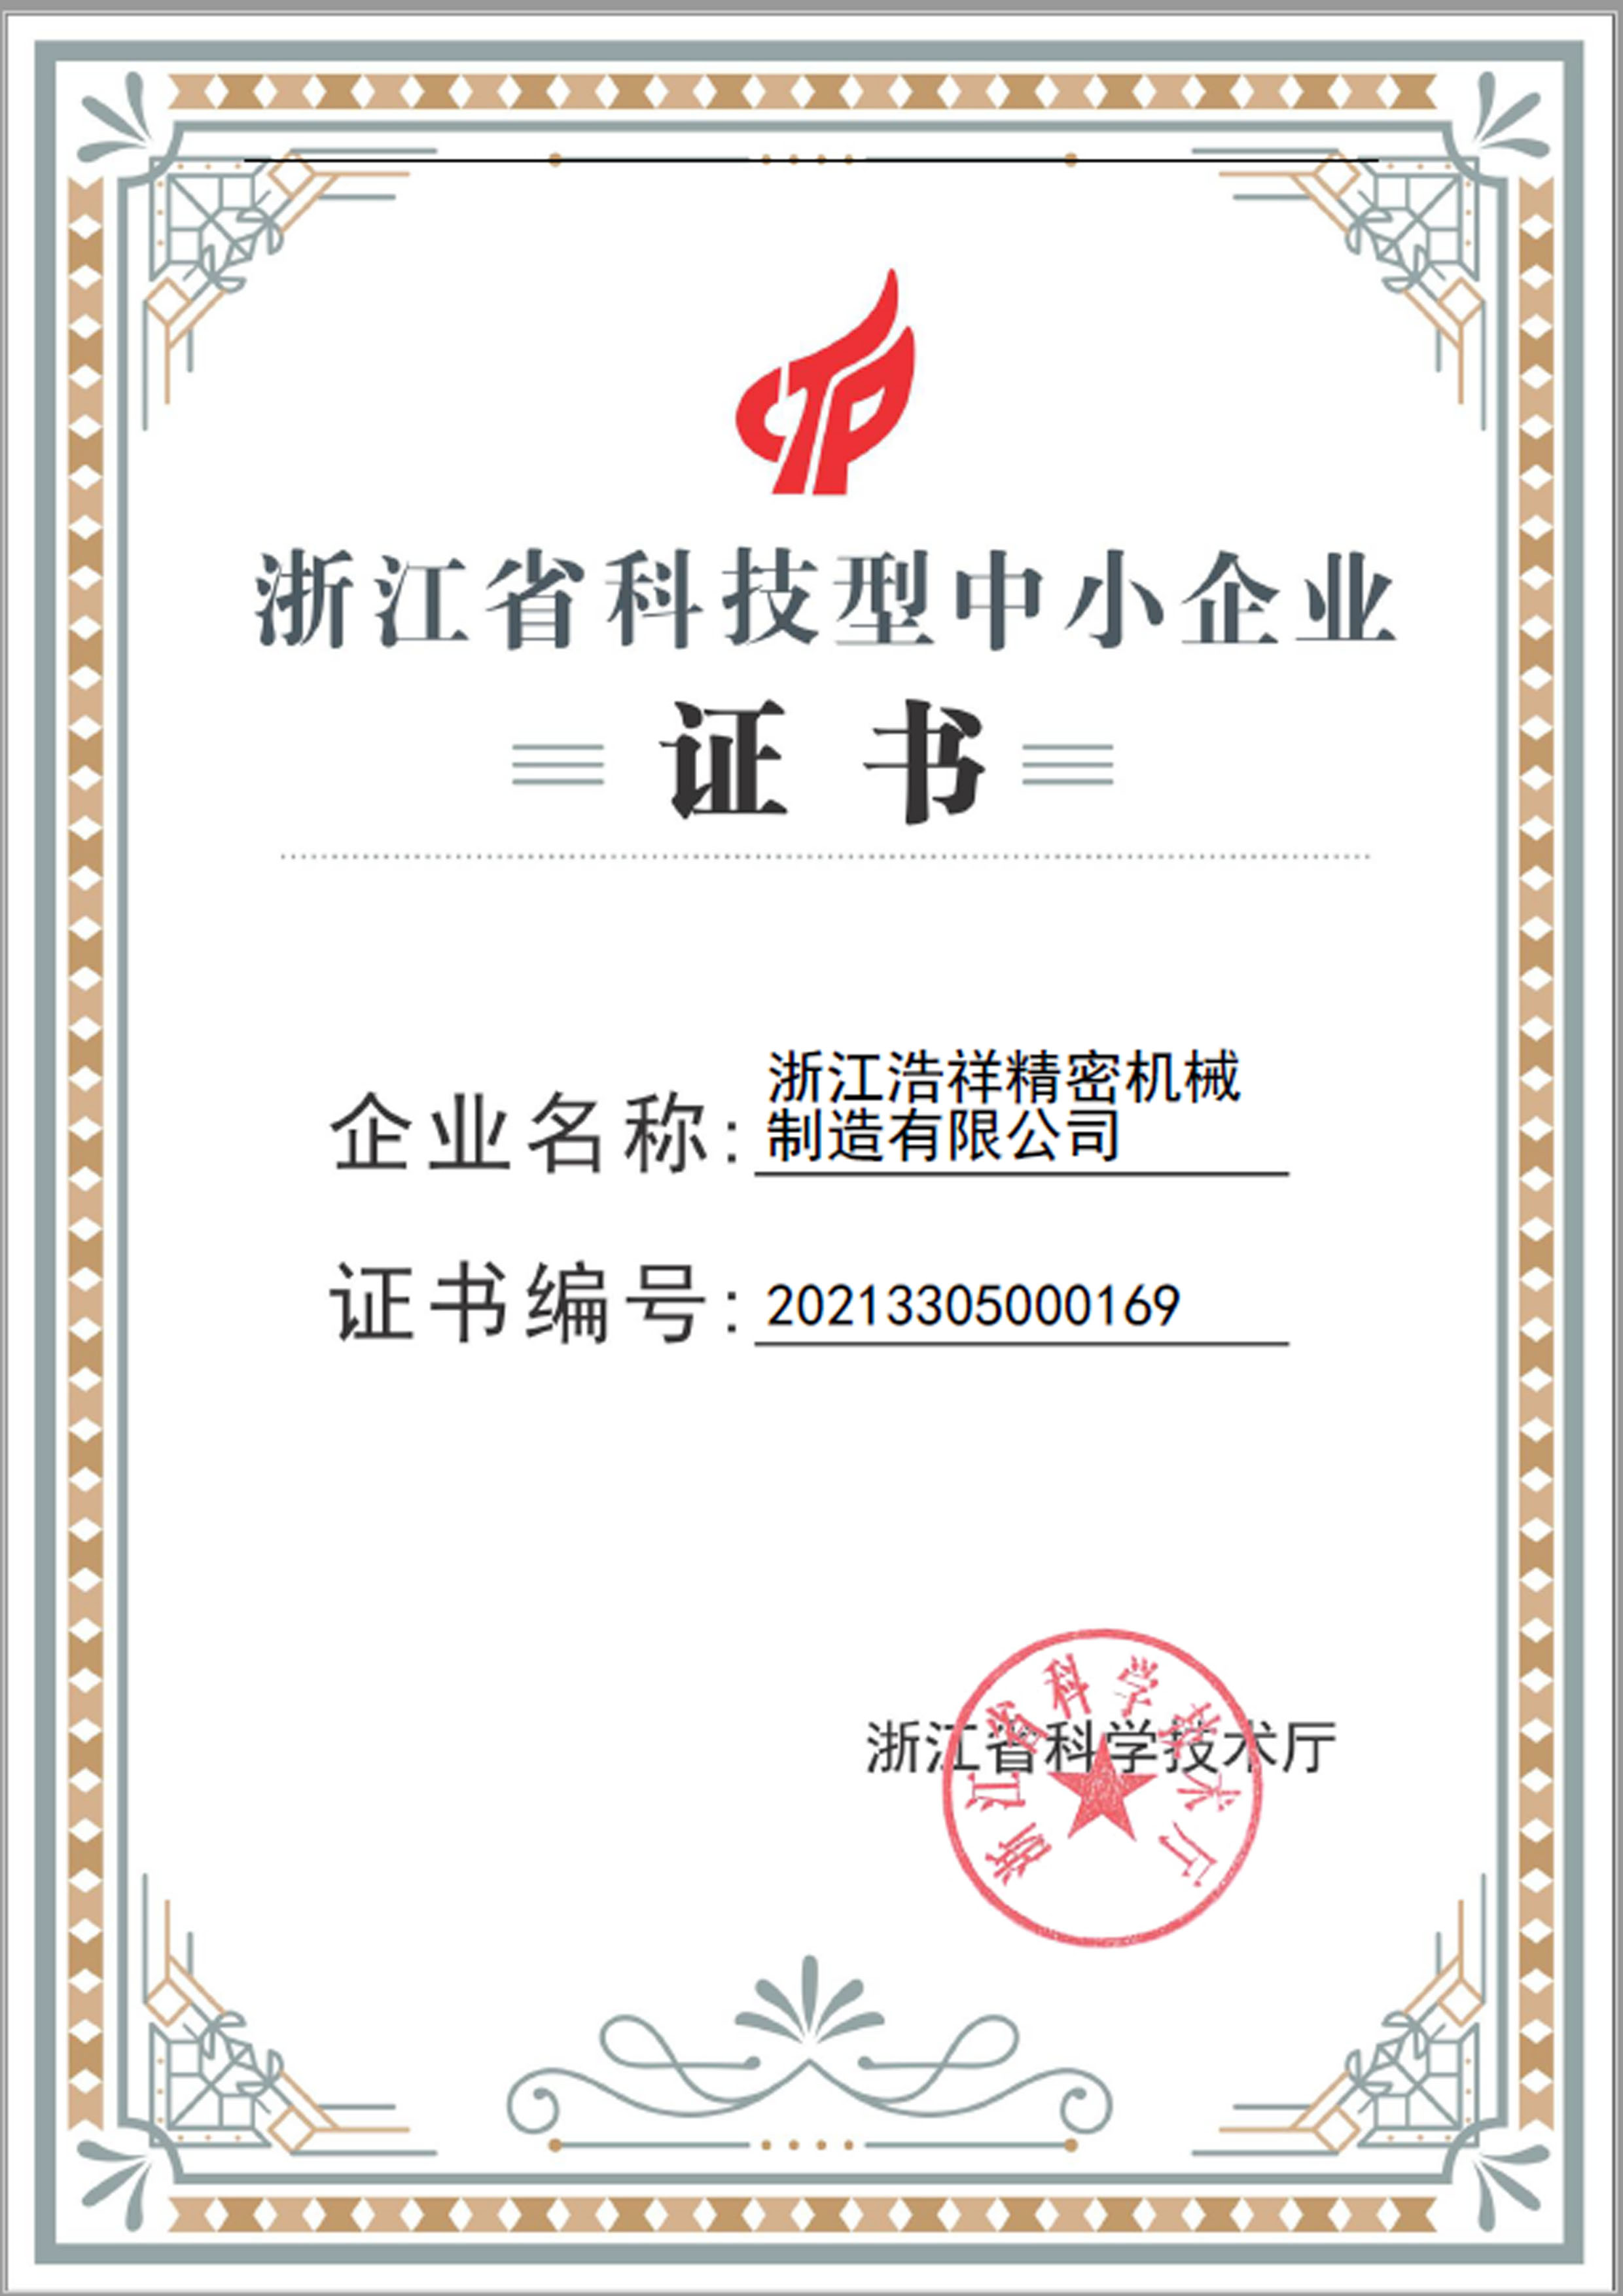 浙江浩祥精密機械制造有限公司榮獲“浙江省科技型中小企業”榮譽稱號！